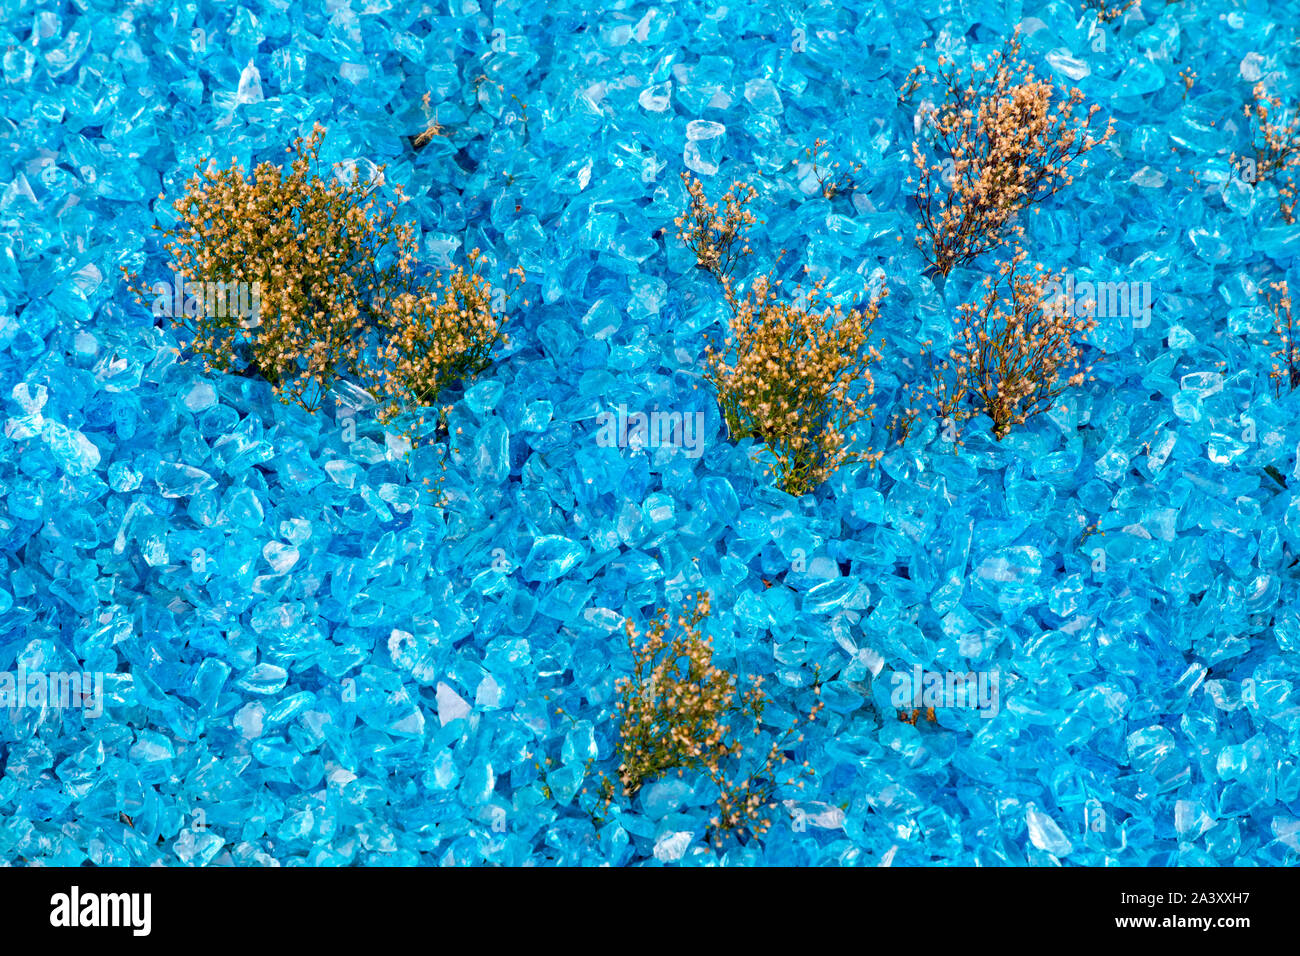 Blumenbeet, aus blauem Glas, Scherben, Kristalle, kleine Zierpflanzen in Zwischen, Dekoration, Stockfoto